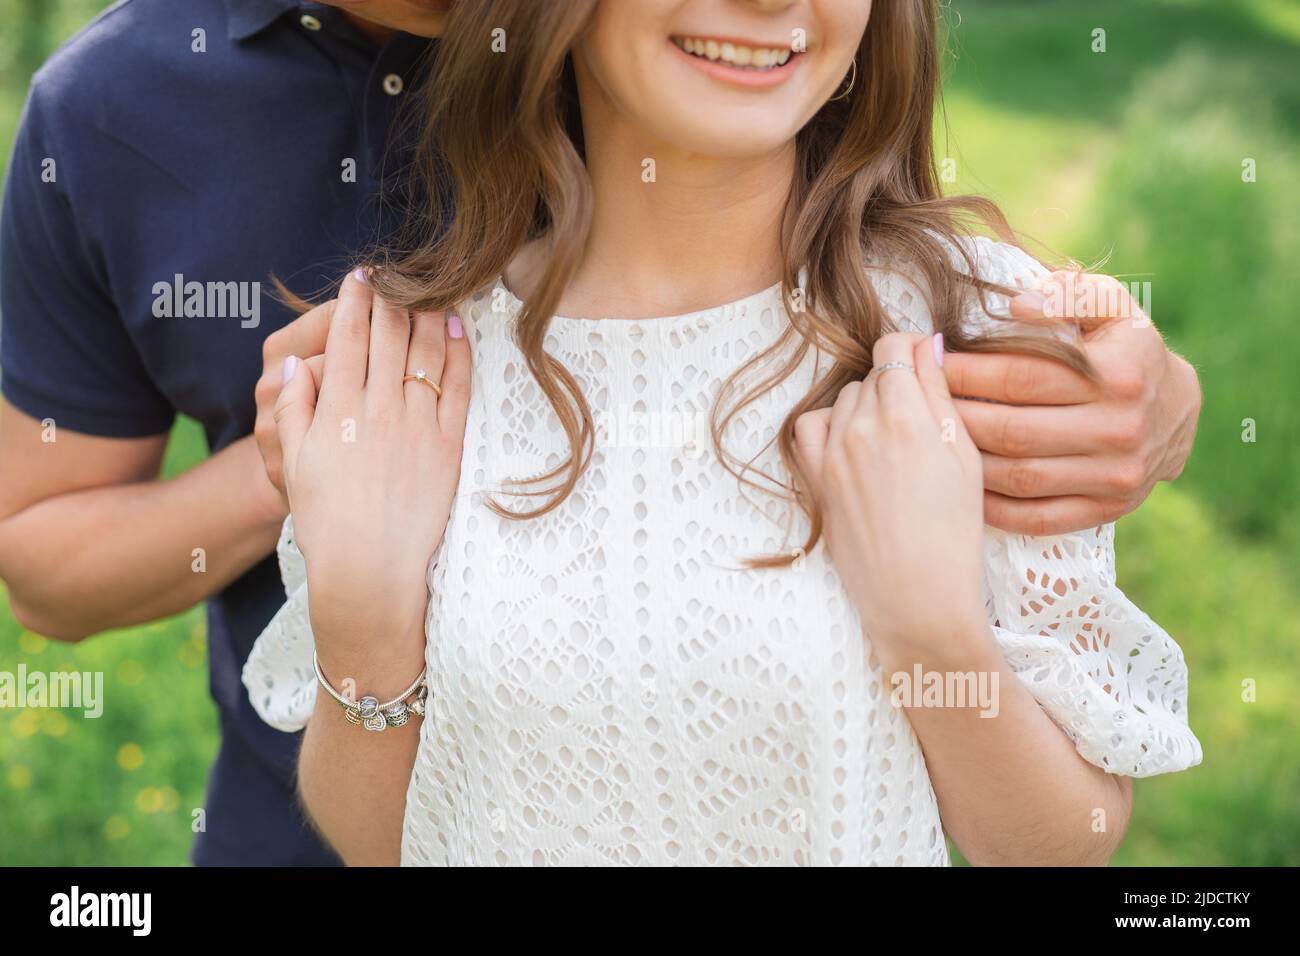 Ritratto di giovane coppia romantica che si abbraccia, sorridendo, godendo la giornata estiva nel parco. Donna uomo che si innamora Foto Stock